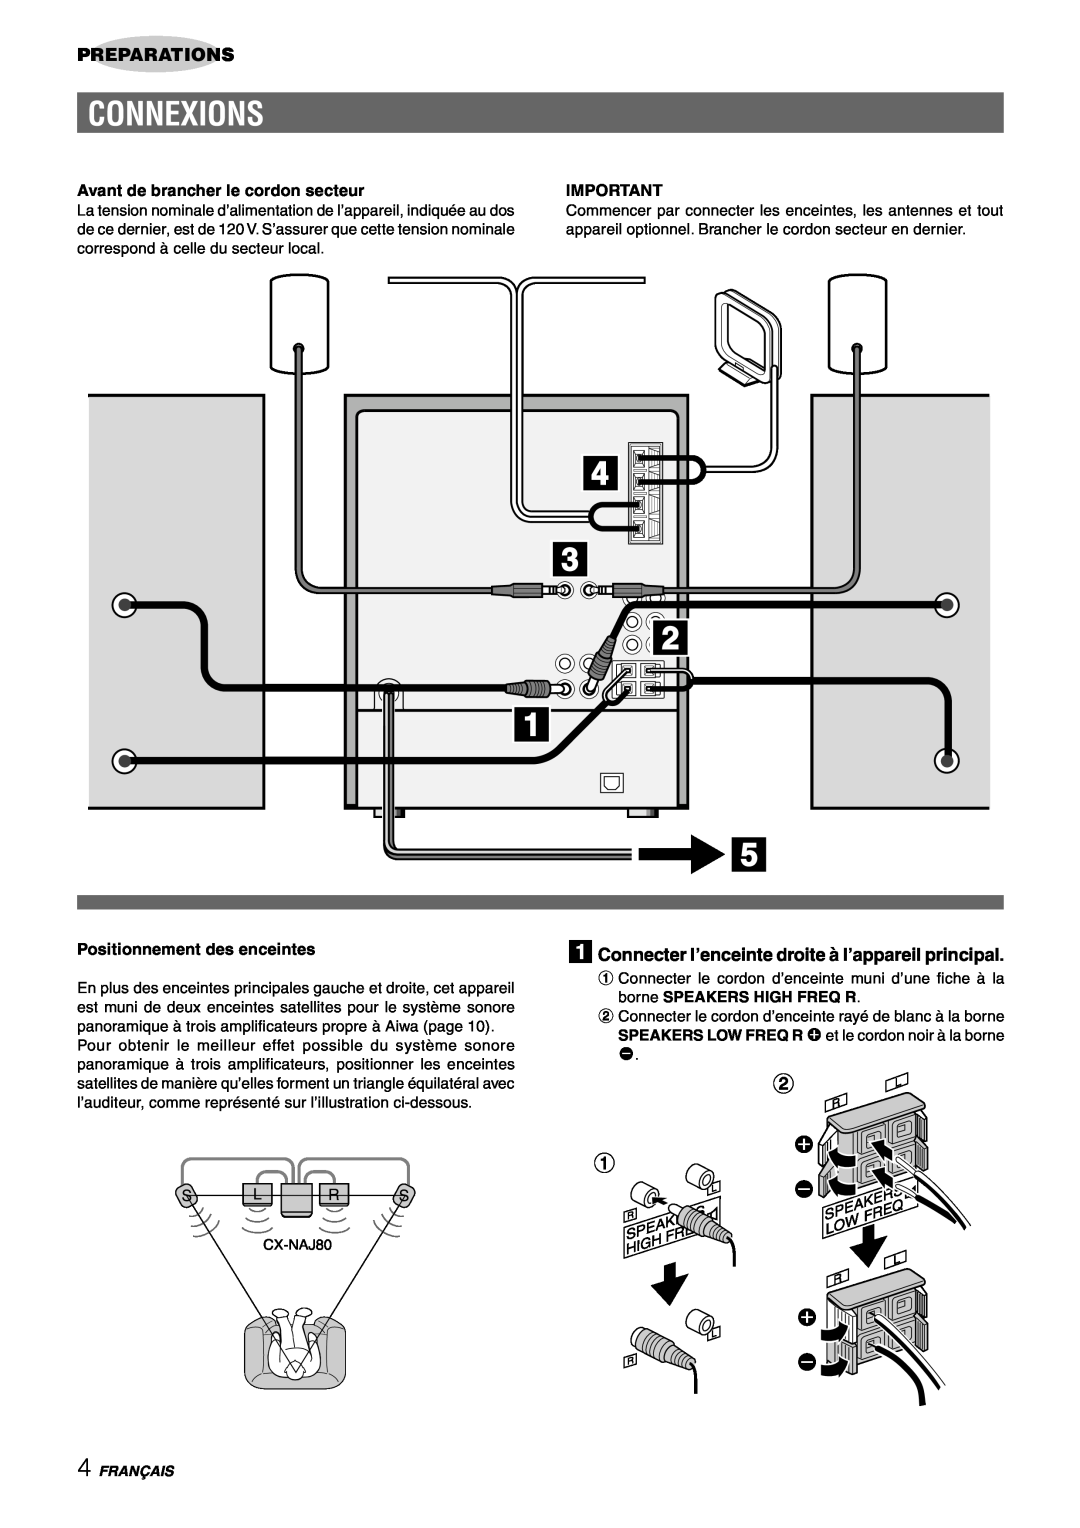 Sony NSX-AJ80 manual Connexions, Preparations, Avant de brancher le cordon secteur, Positionnement des enceintes, Français 